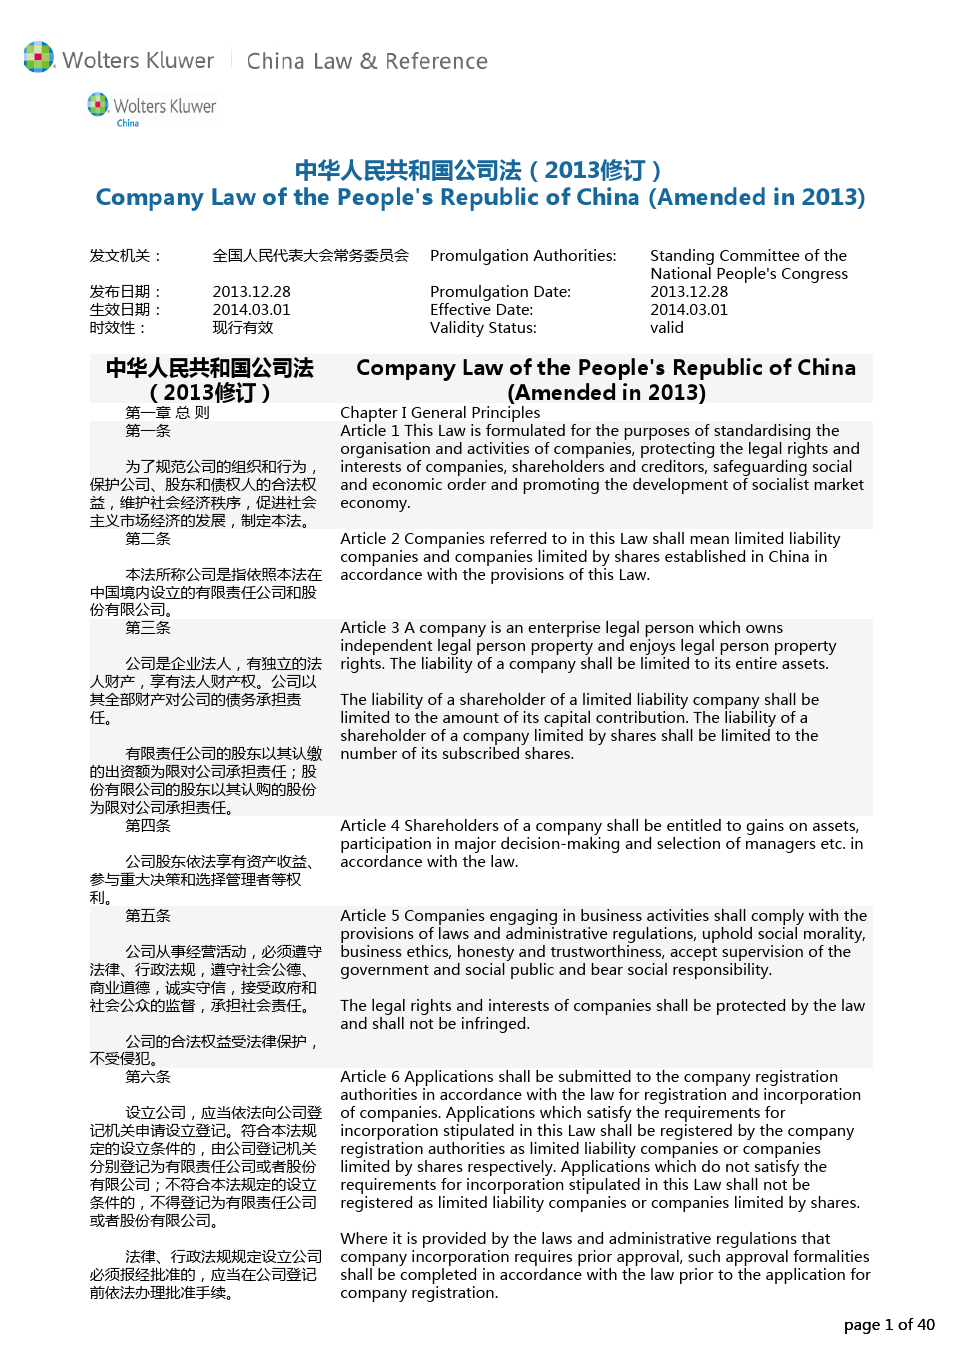 中华人民共和国公司法(2013修订)中英文对照版本